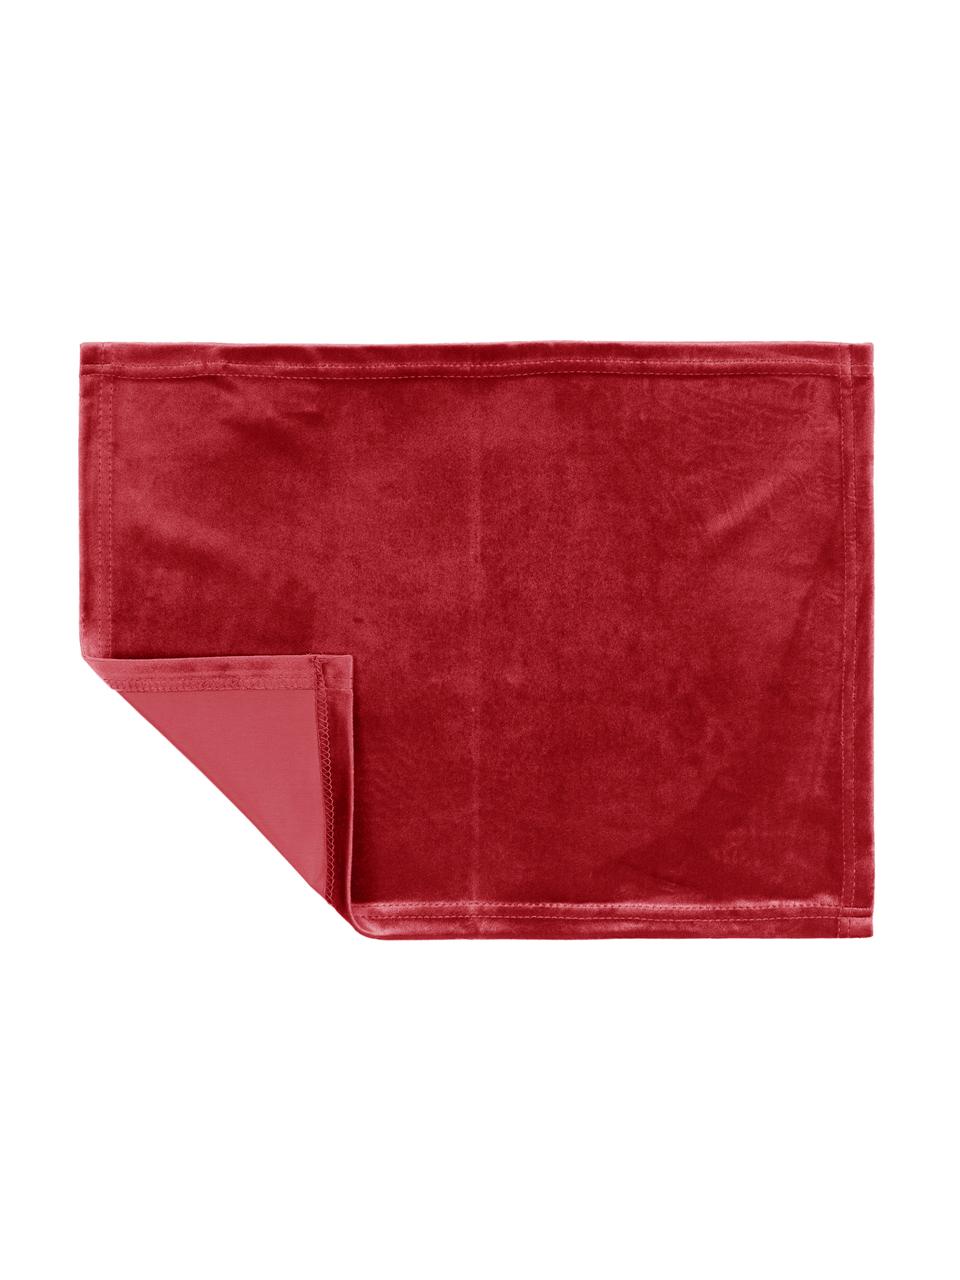 Podkładka z aksamitu Simone, 2 szt., 100% aksamit poliestrowy, Czerwony, D 35 x S 45 cm